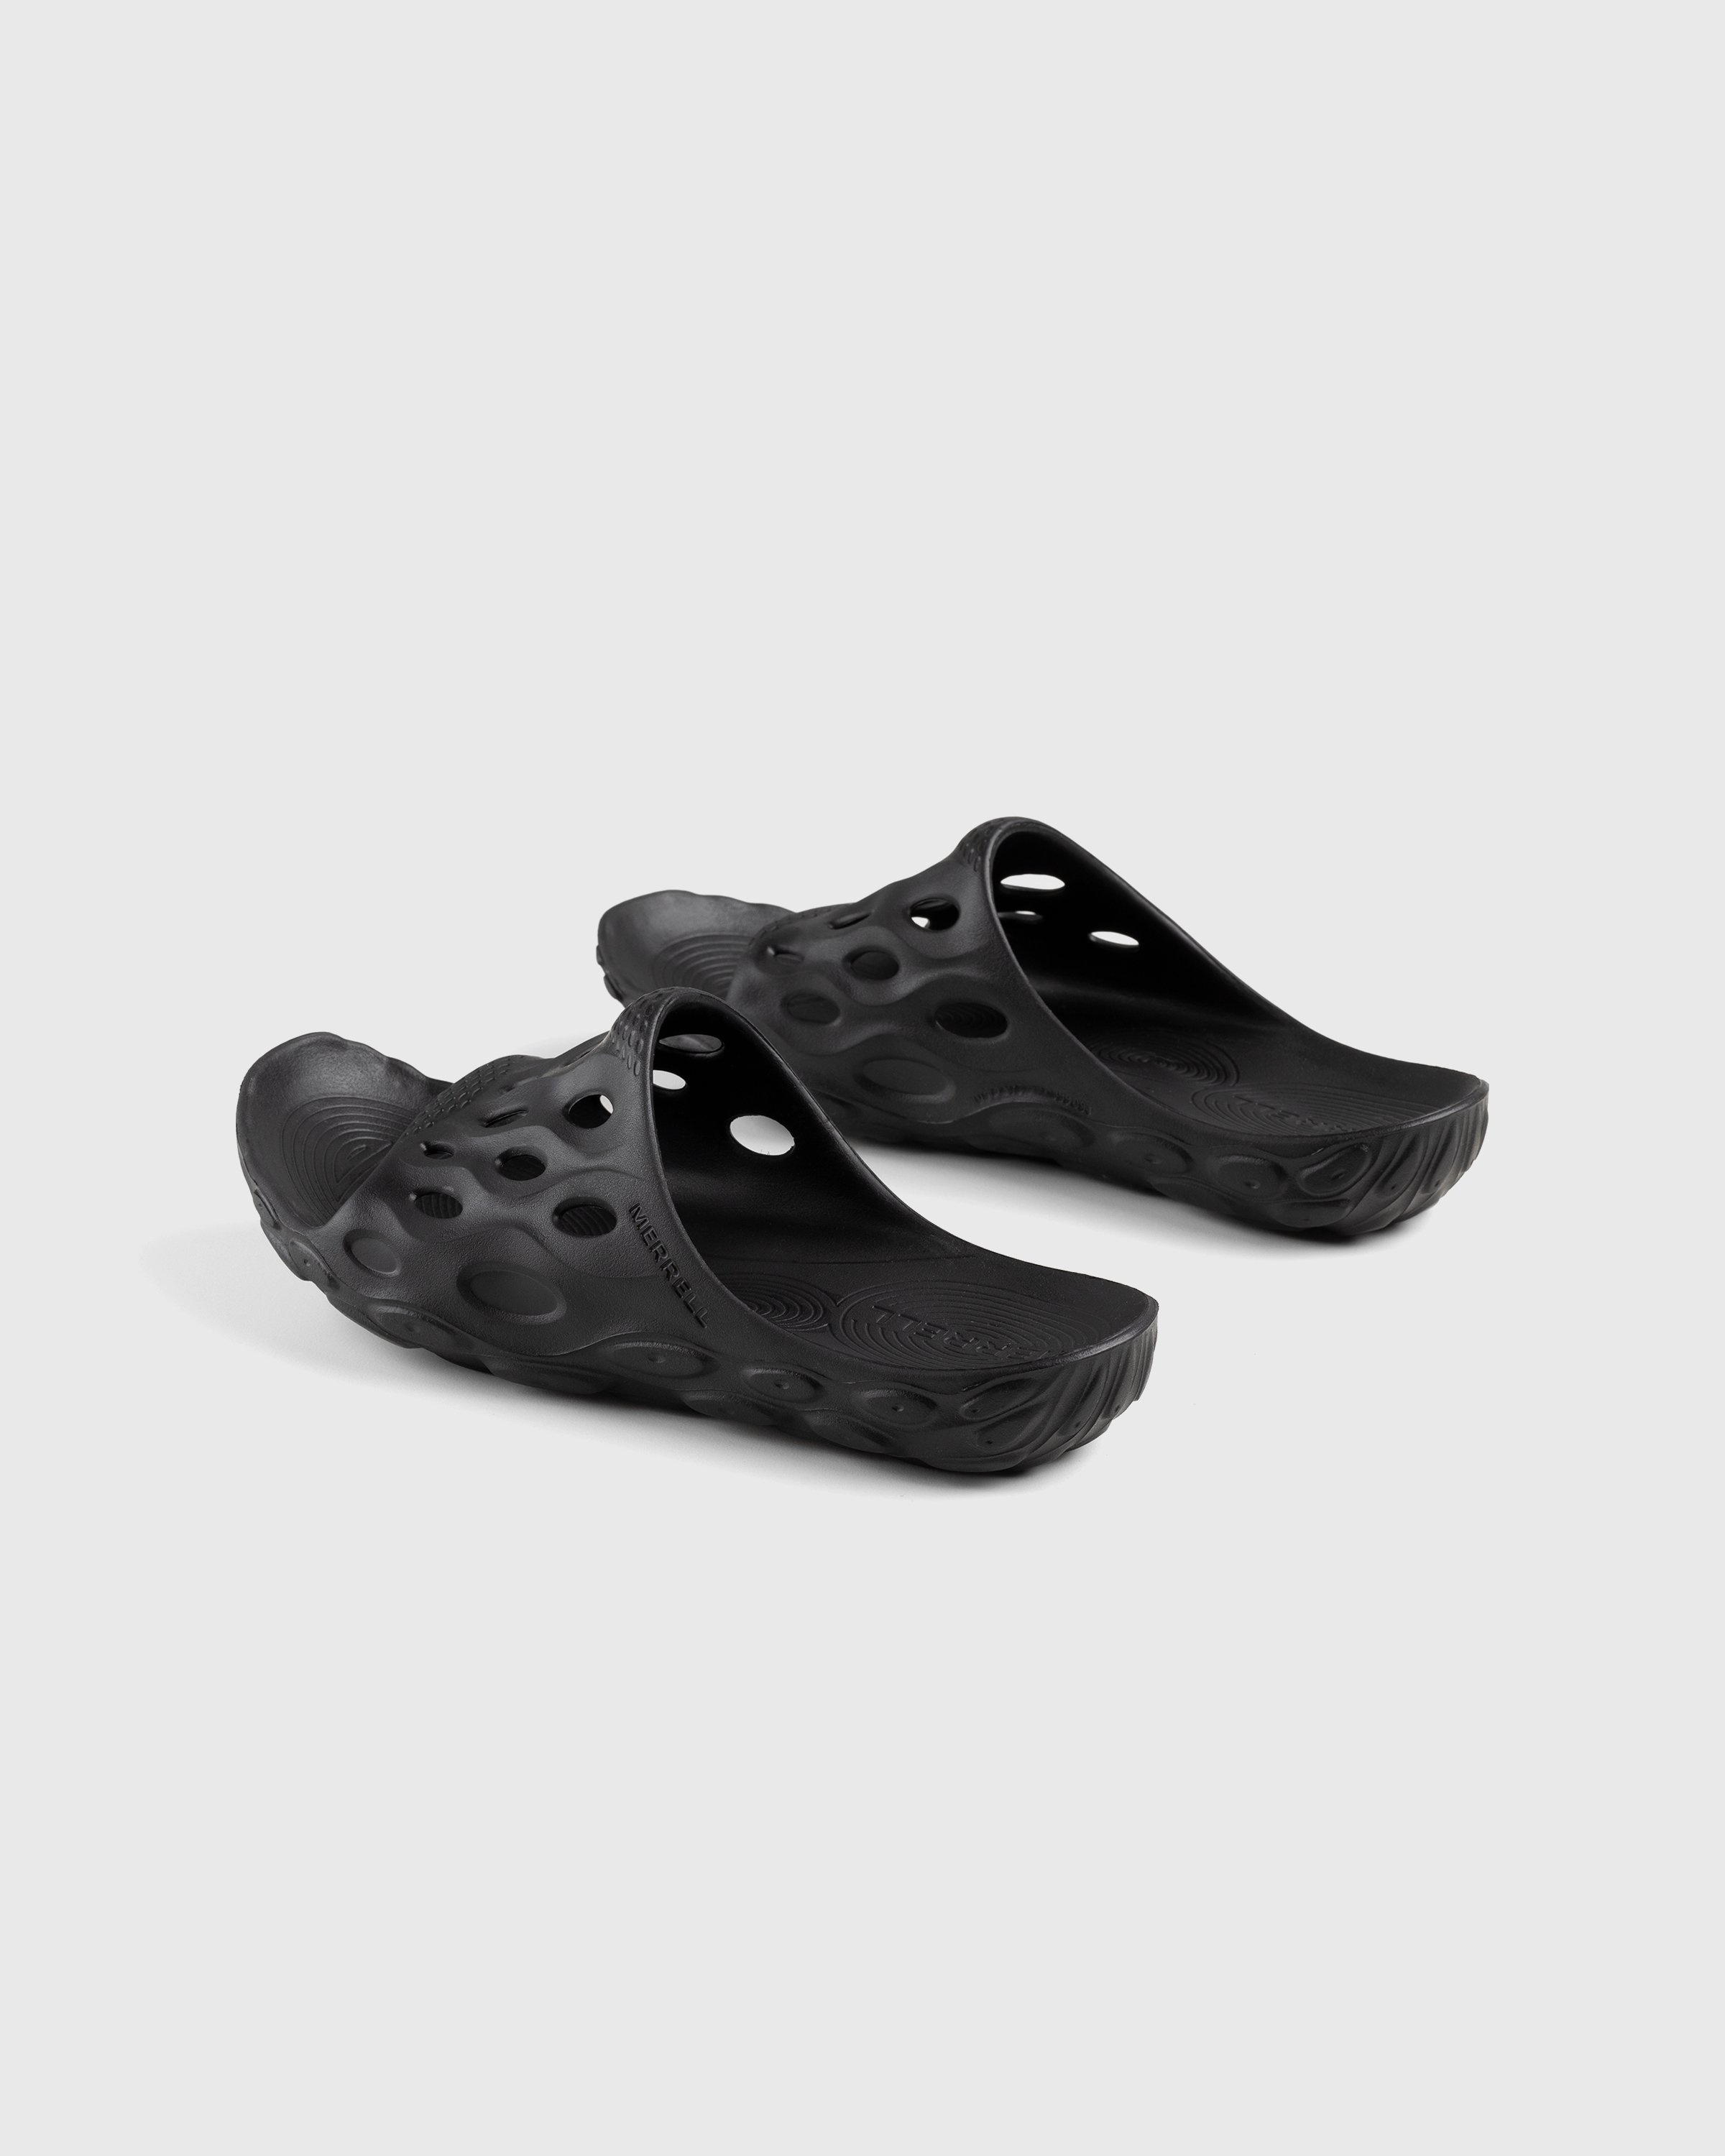 Merrell - Hydro Slide Black/Grey - Footwear - Black - Image 4